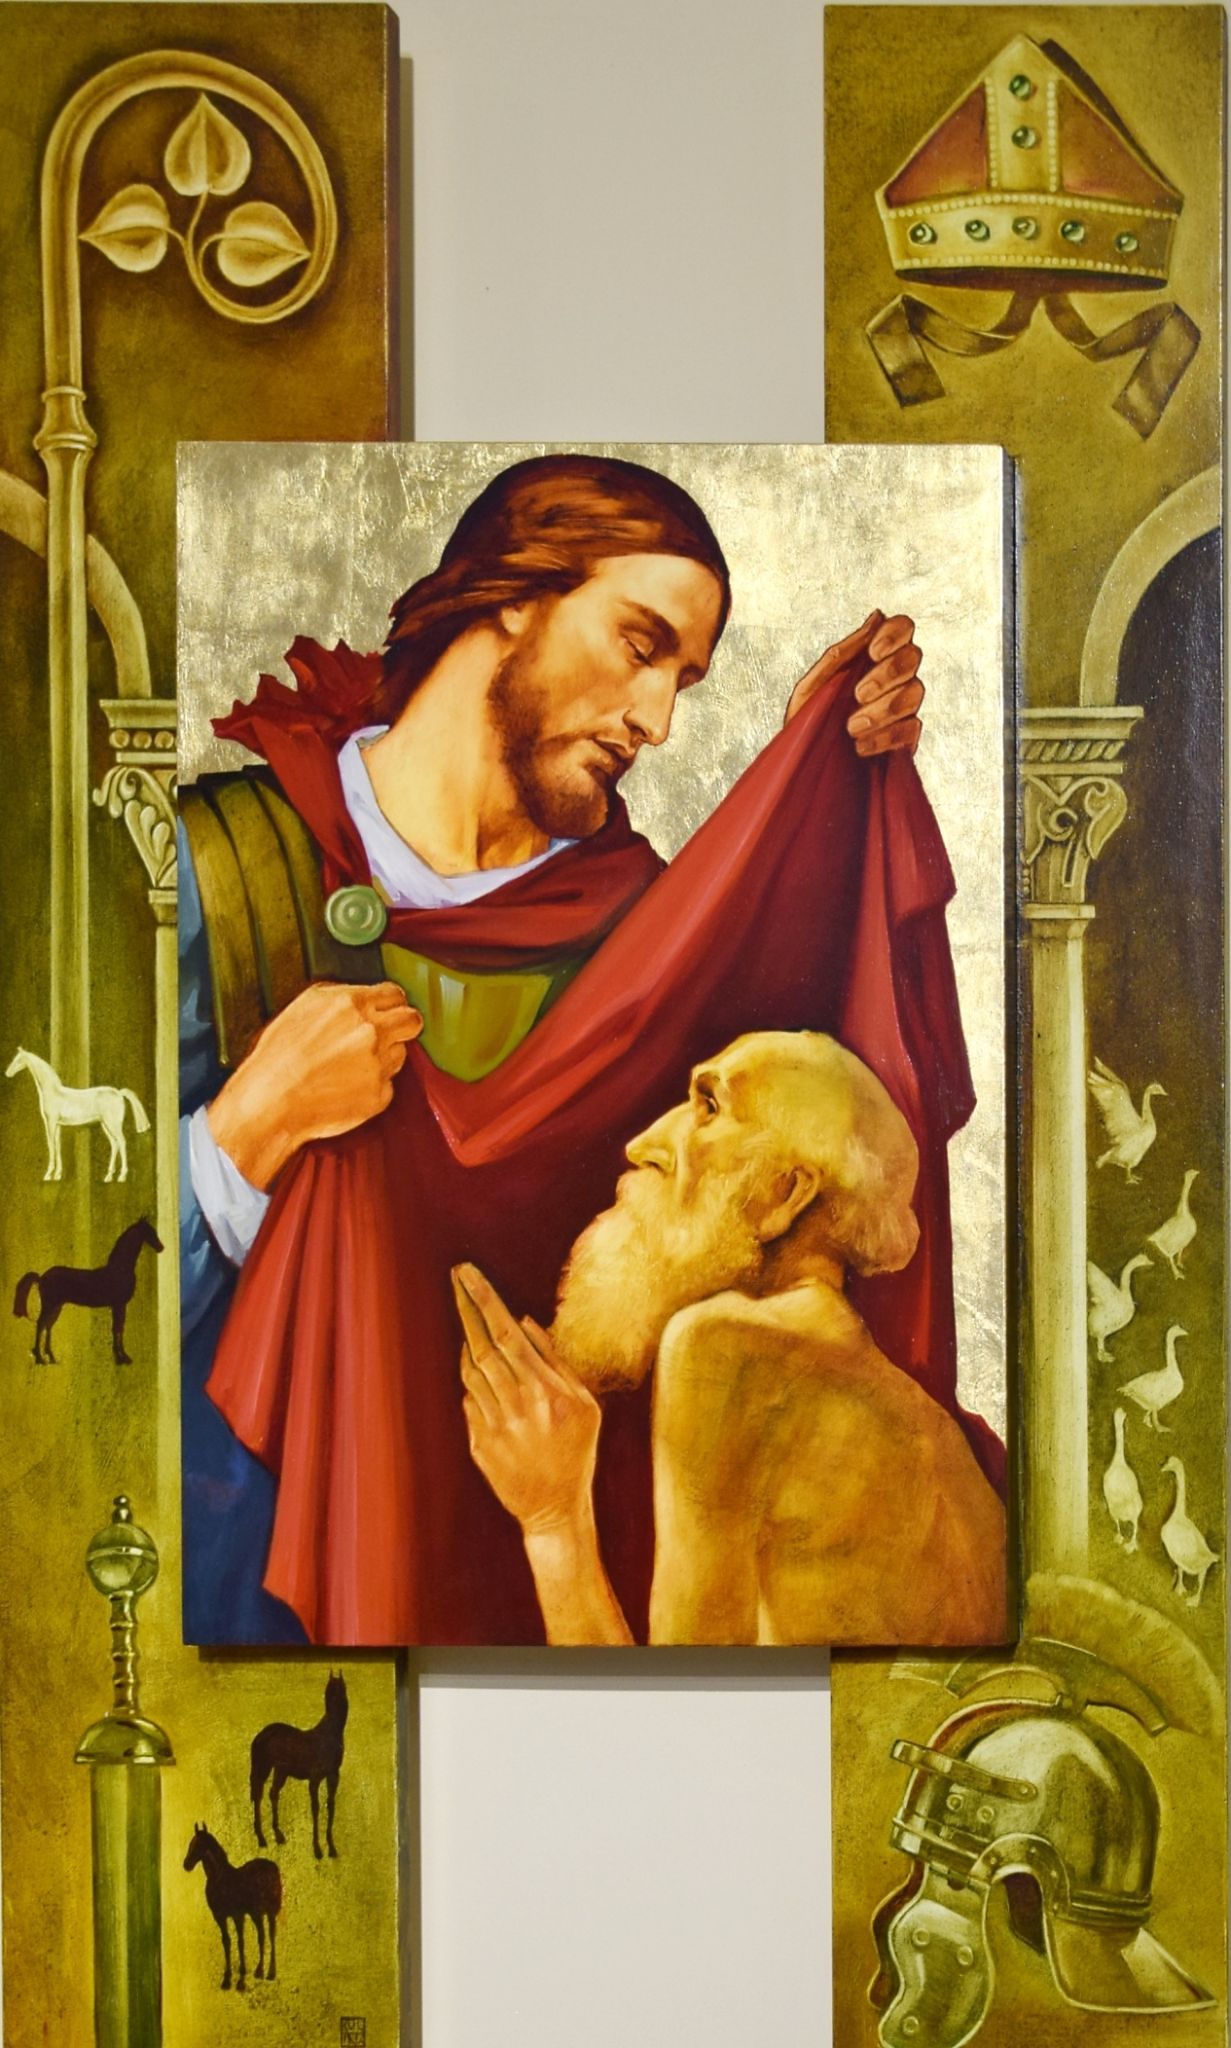 Obraz v presbytáři znázorňuje známou scénu obdarování žebráka sv. Martinem, který je zde ztotožněn se samotným Kristem. Po obou stranách je pomocí atributů znázorněn přerod Martina ze služebníka v armádě ve služebníka v církvi